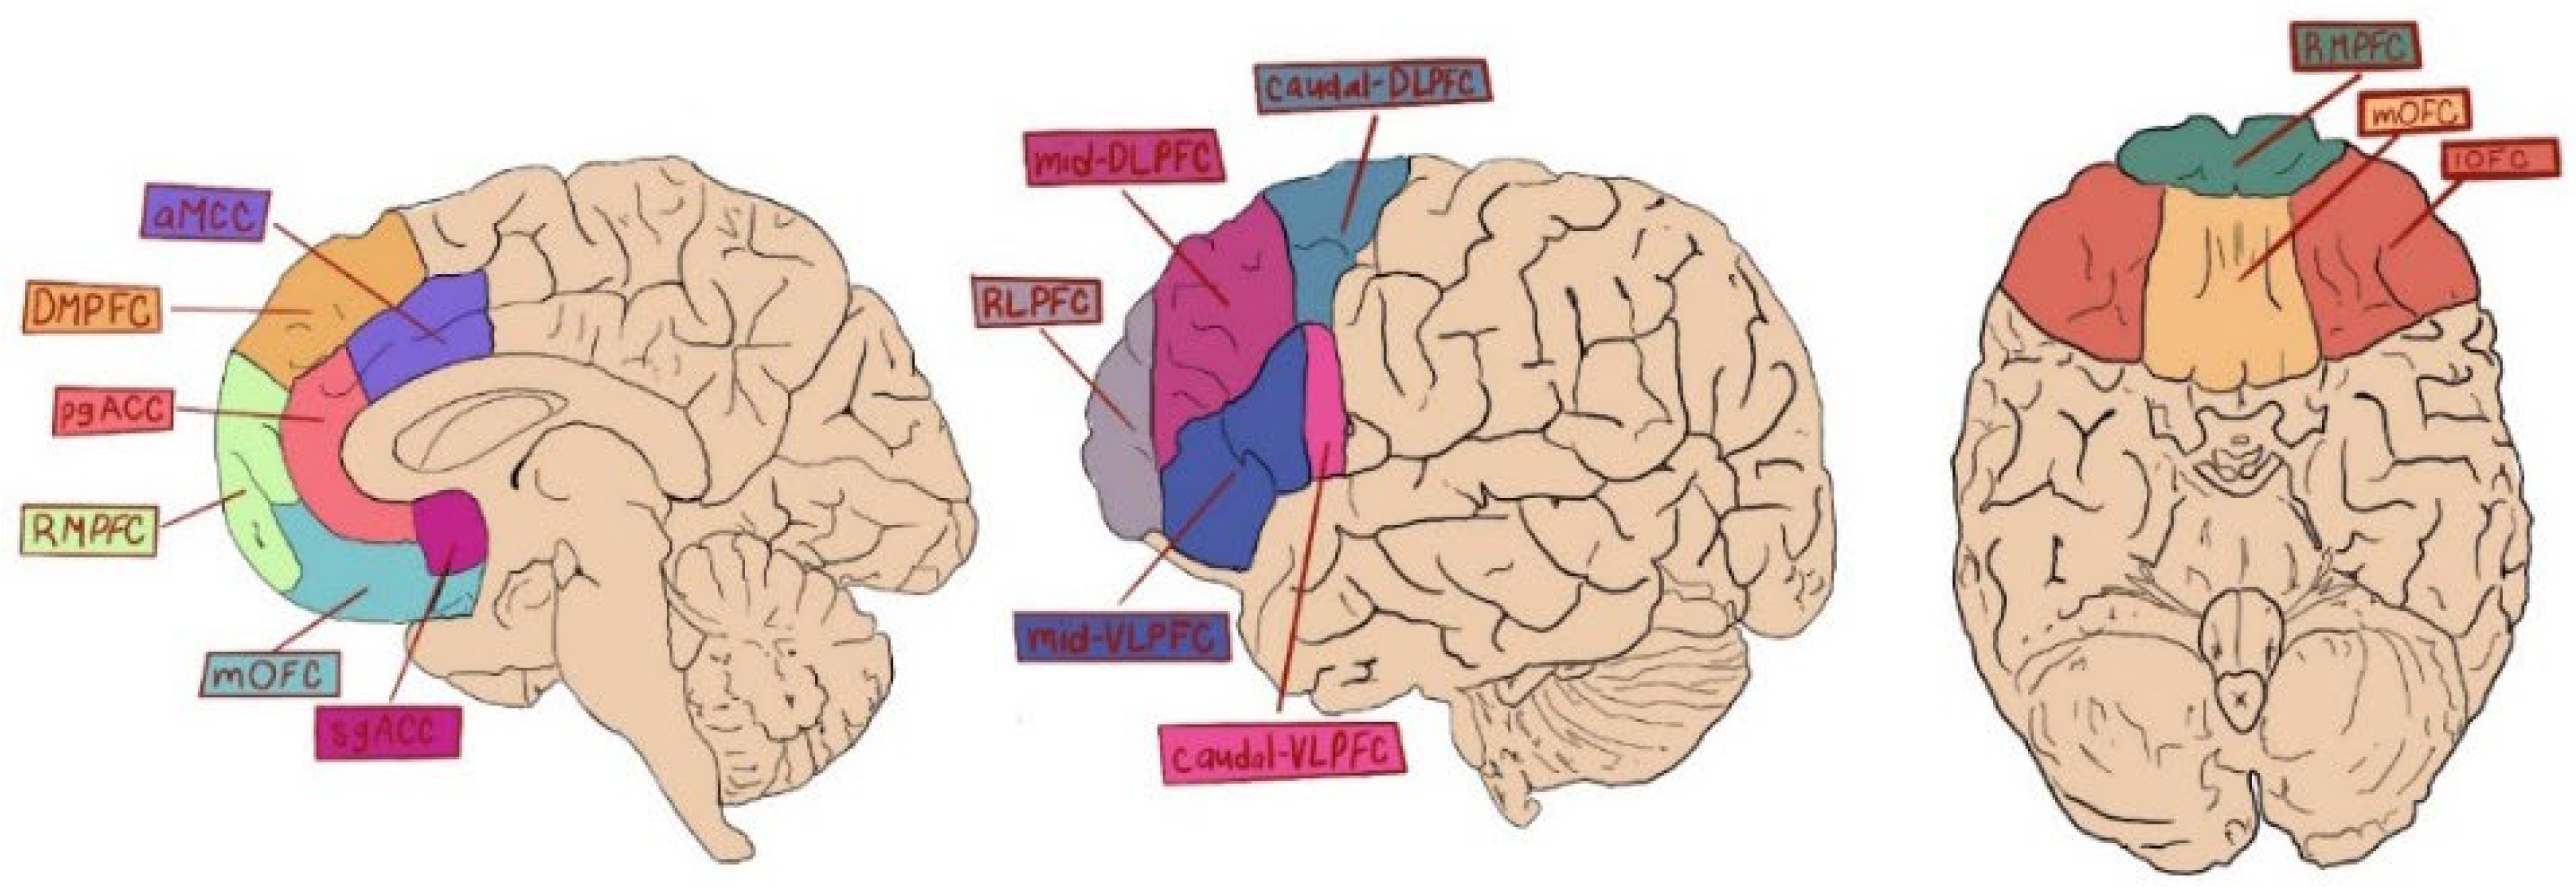 ventrolateral prefrontal cortex